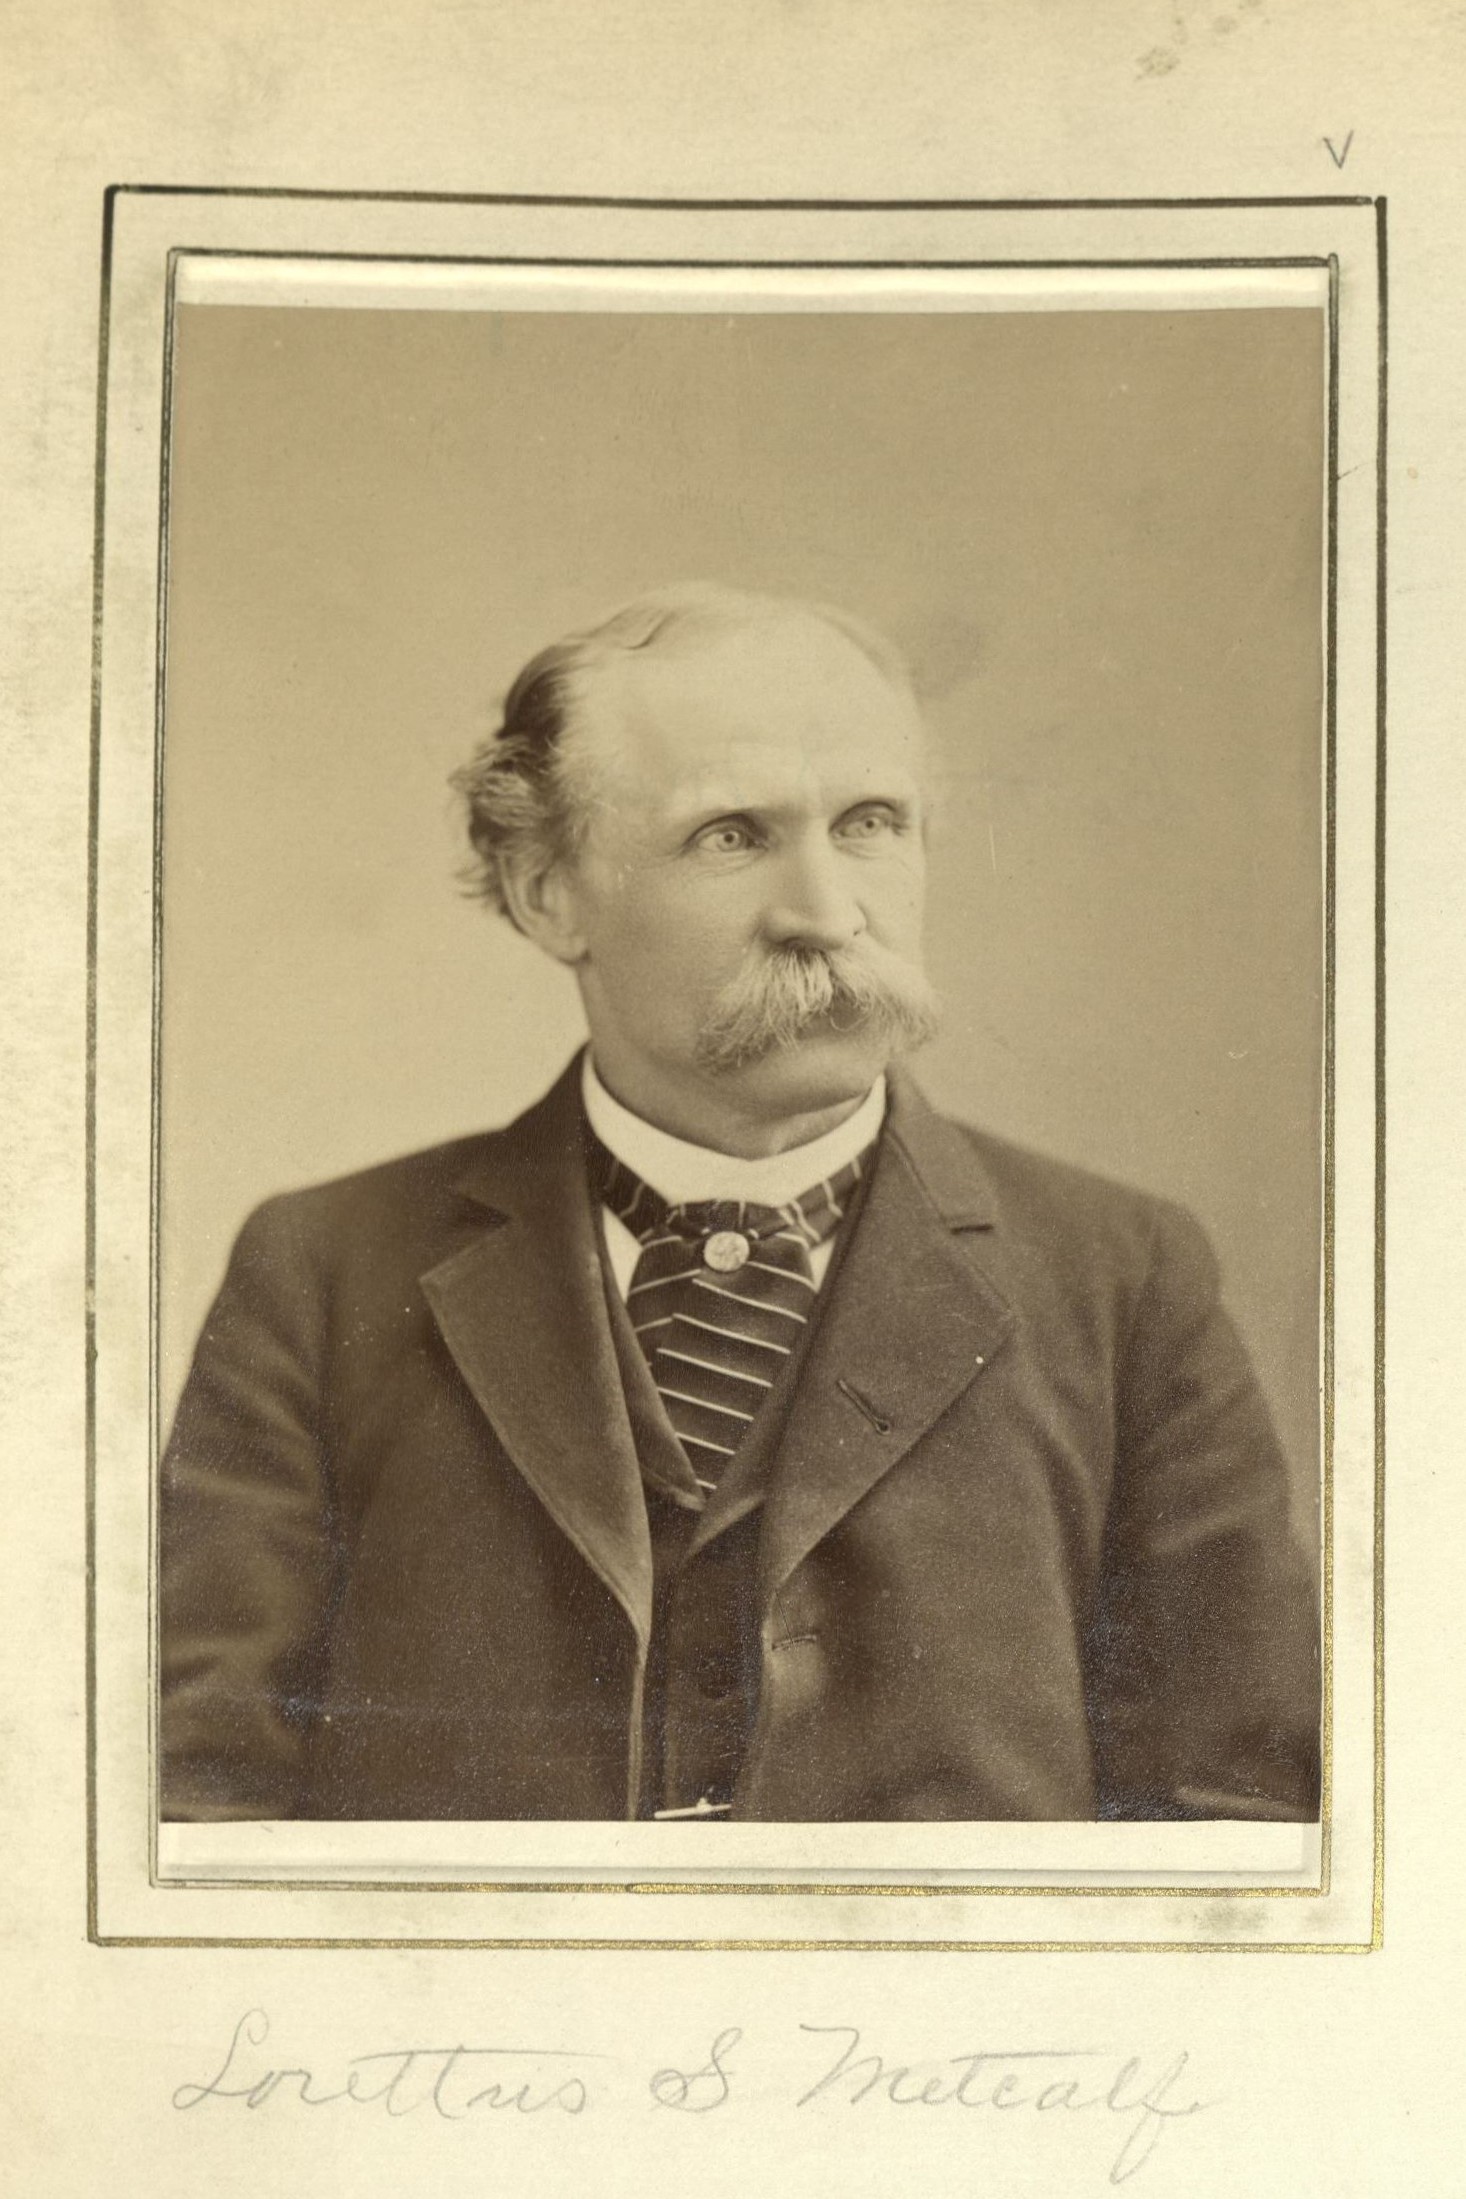 Member portrait of Lorettus Metcalf